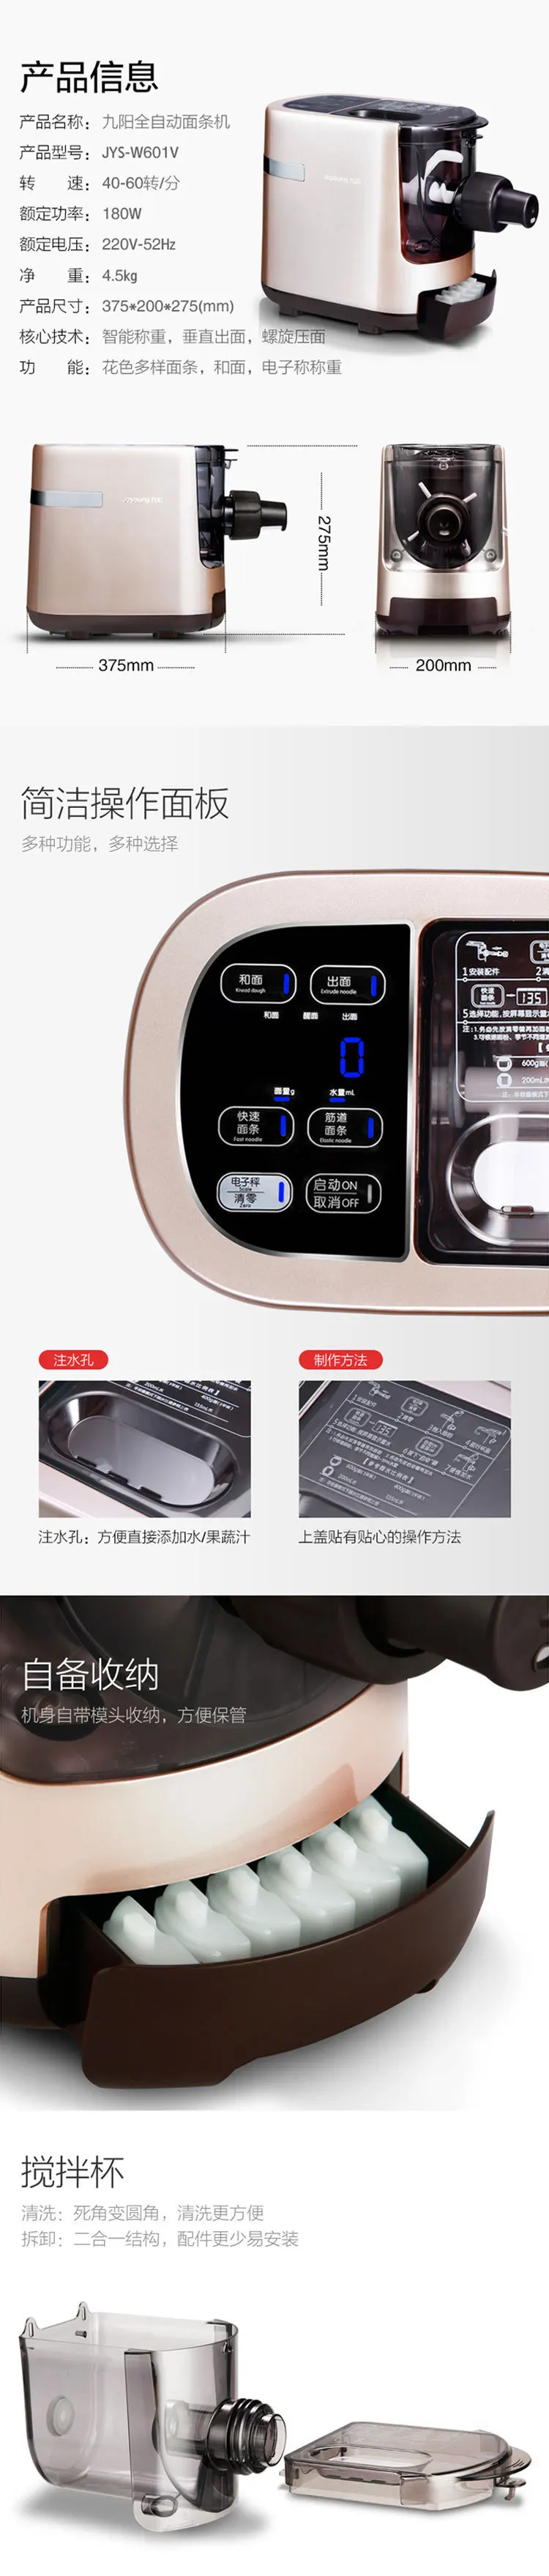 JYN-W601V электрическая лапша автоматическая кофемашина для дома интеллектуальная лапша производитель пресс поверхность машина пельменки машина